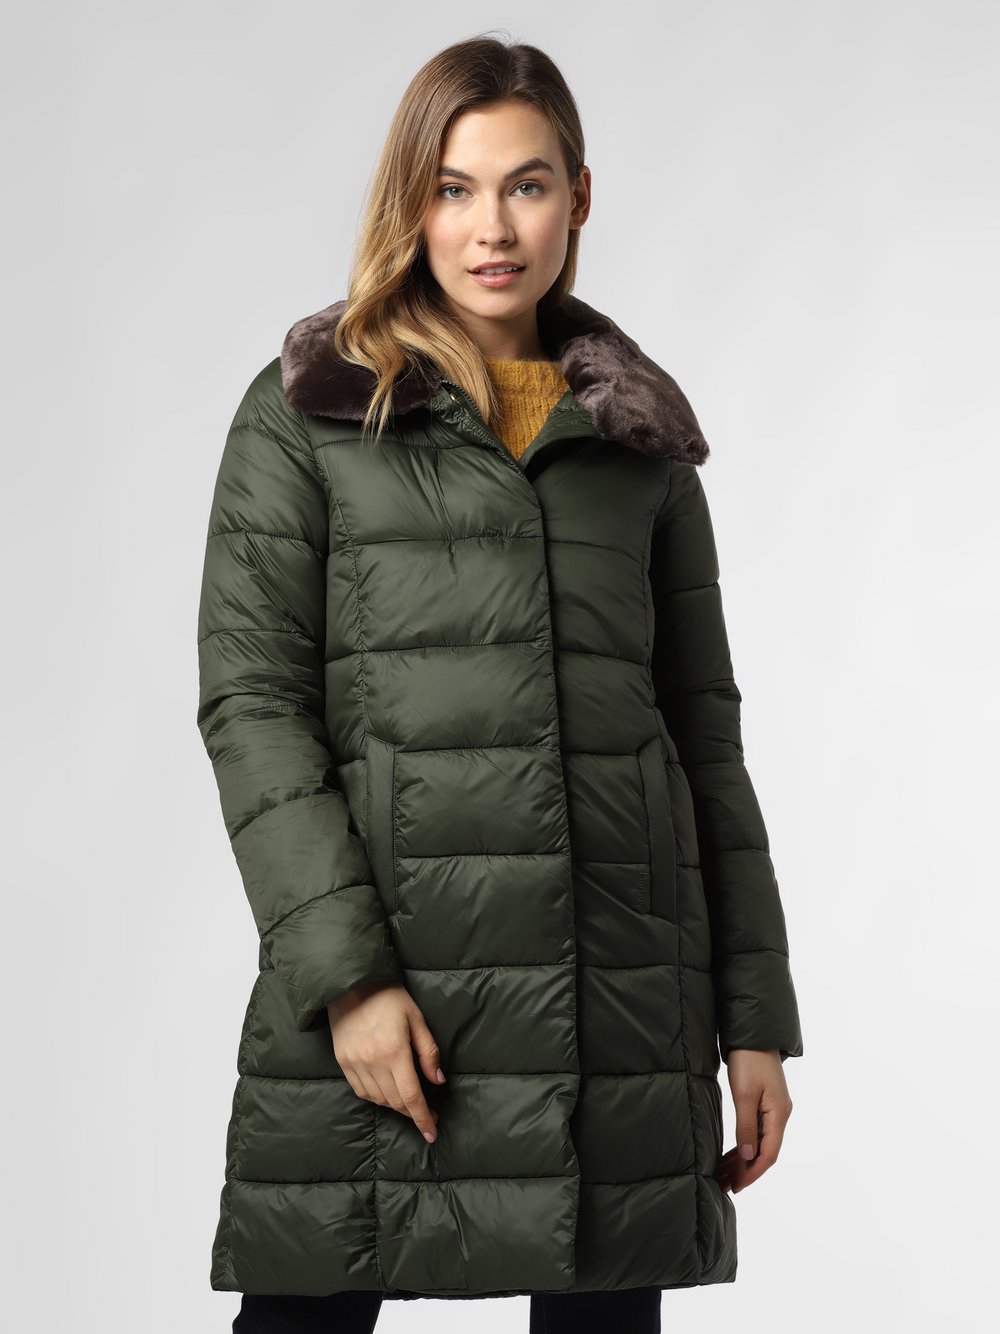 Barbour - Damski płaszcz pikowany – Teasel, zielony